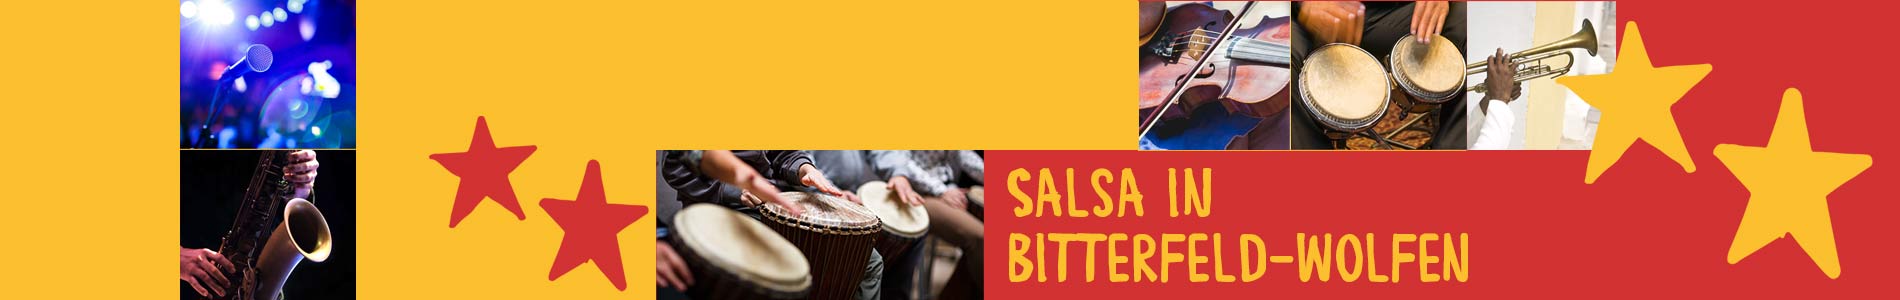 Salsa in Bitterfeld-Wolfen – Salsa lernen und tanzen, Tanzkurse, Partys, Veranstaltungen